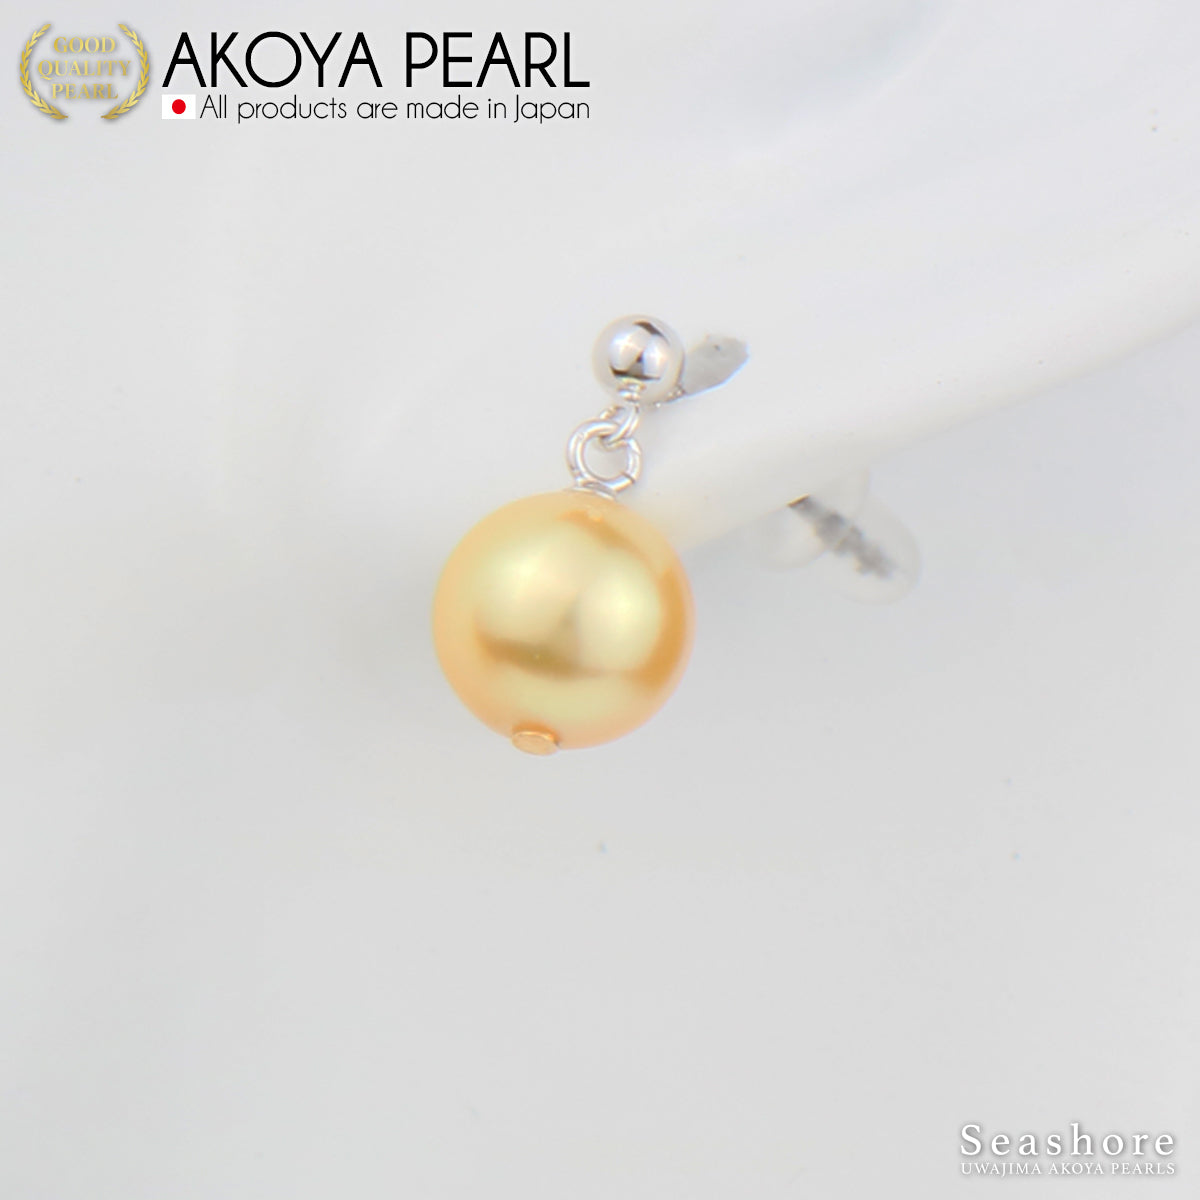 [金 Akoya] 珍珠耳环/耳环 [8.0-8.5mm] 摆动型黄铜/钛 Akoya 珍珠